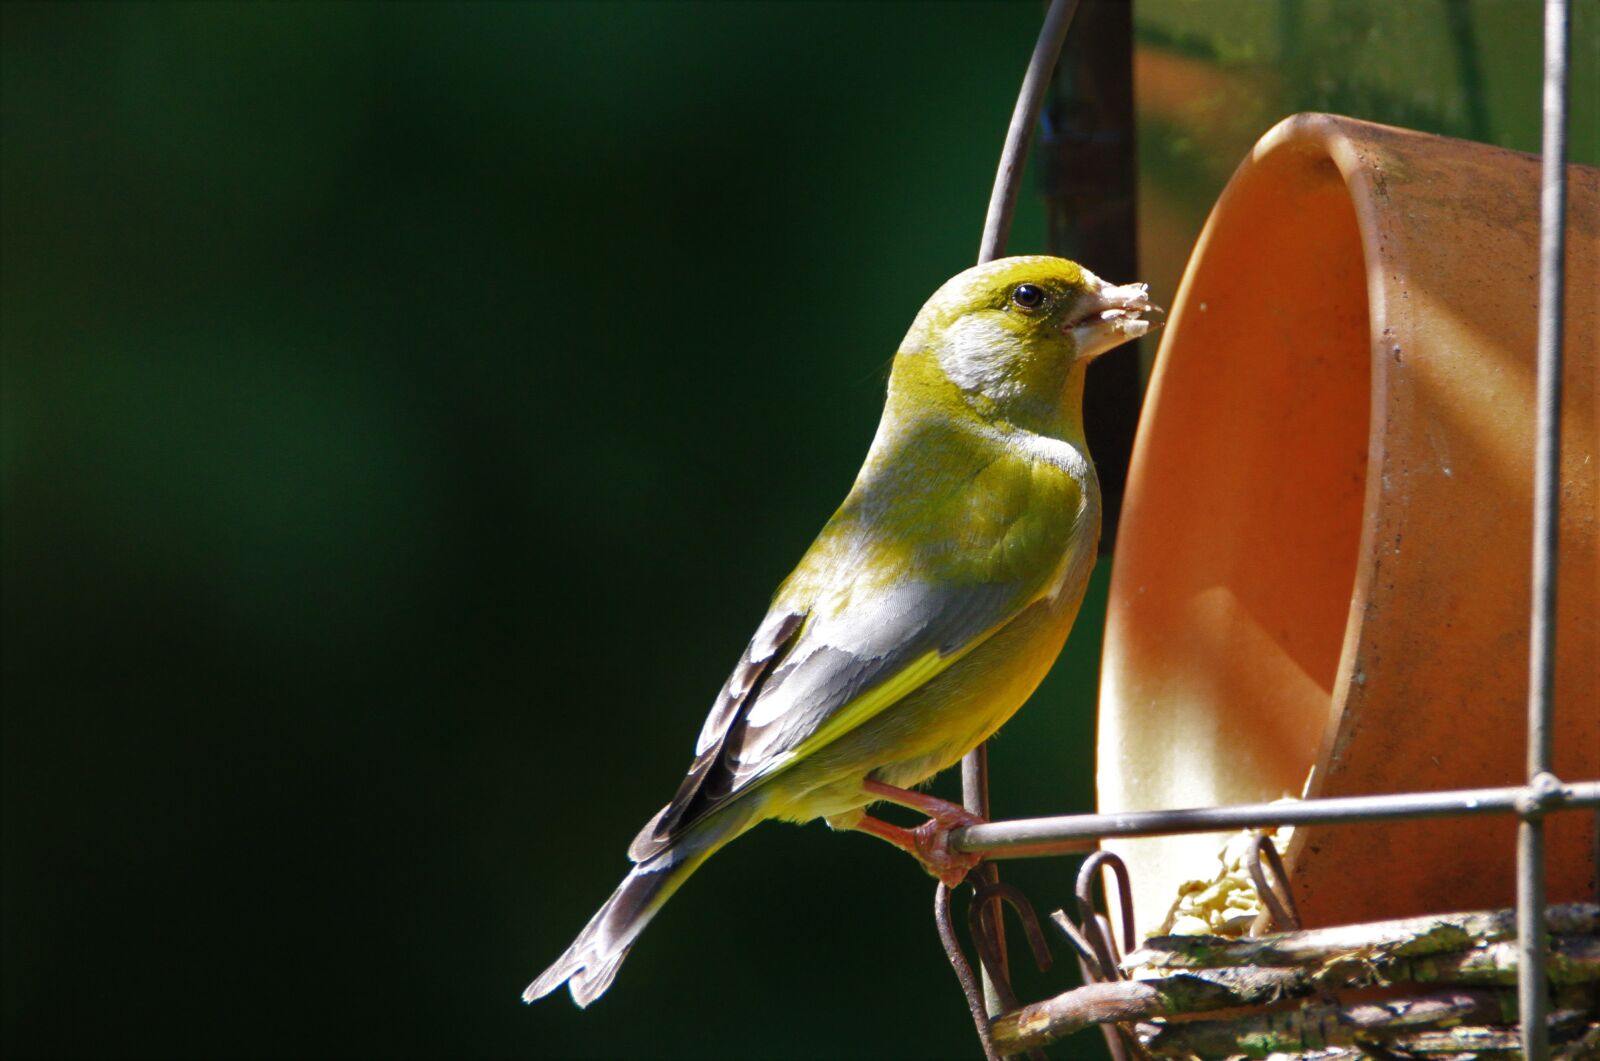 Canon EOS 7D sample photo. Greenfinch, bird, songbird photography